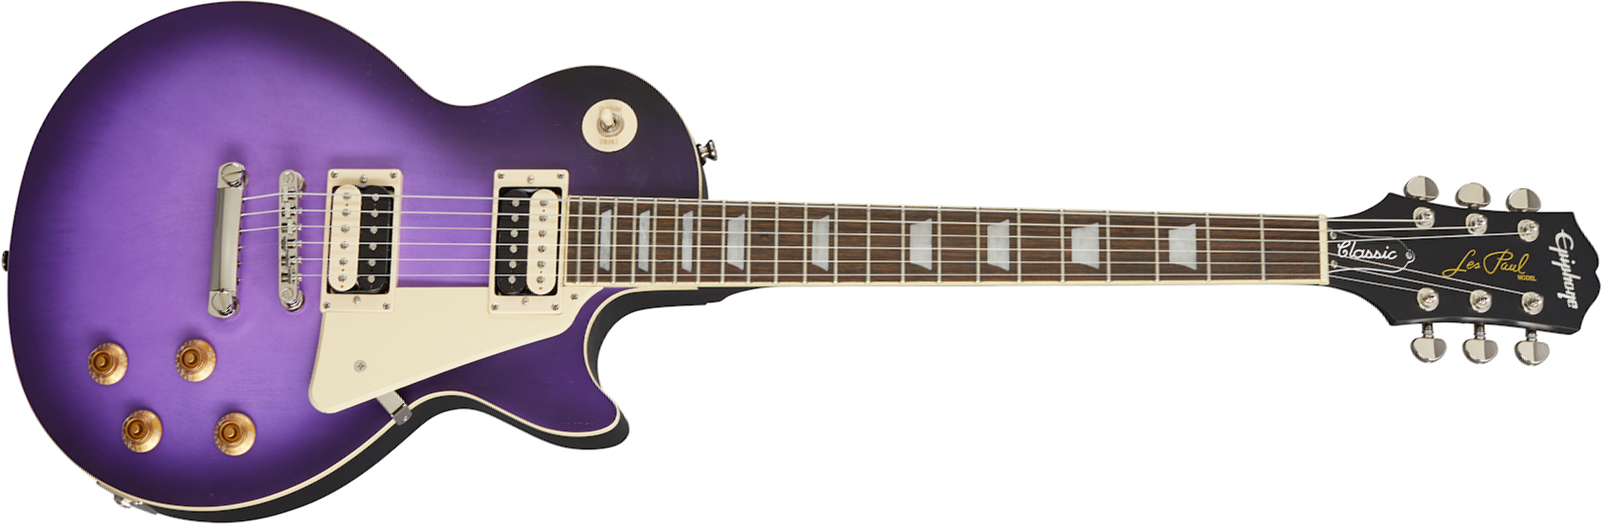 Epiphone Les Paul Classic 2h Ht Rw - Worn Purple - Guitarra eléctrica de corte único. - Main picture